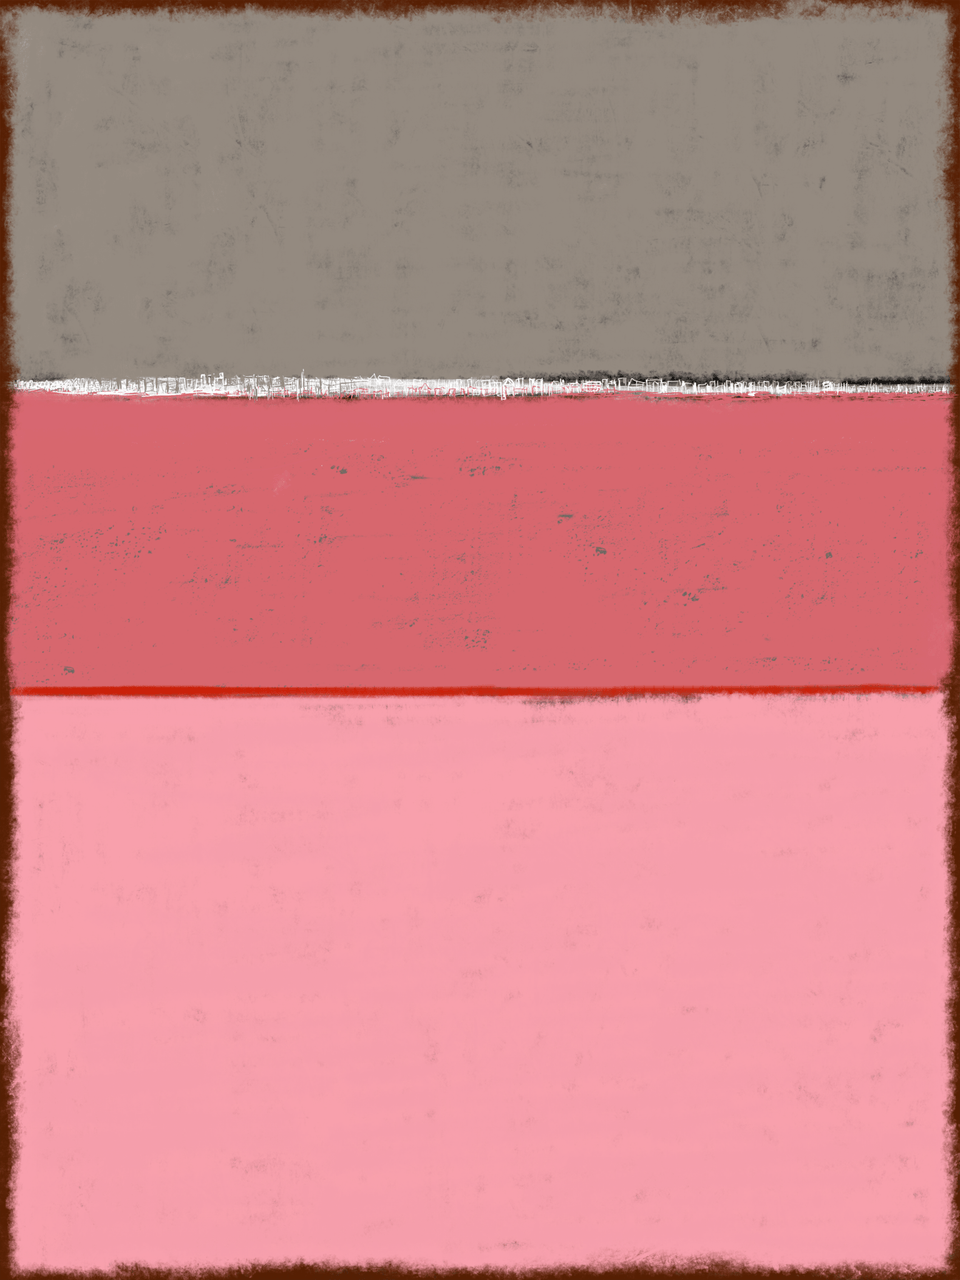  Couleurs Rothko de roses et gris, - Peinture abstraite  artiste peintre Ludwig Mario  galerie TACT Art abstrait & contemporain